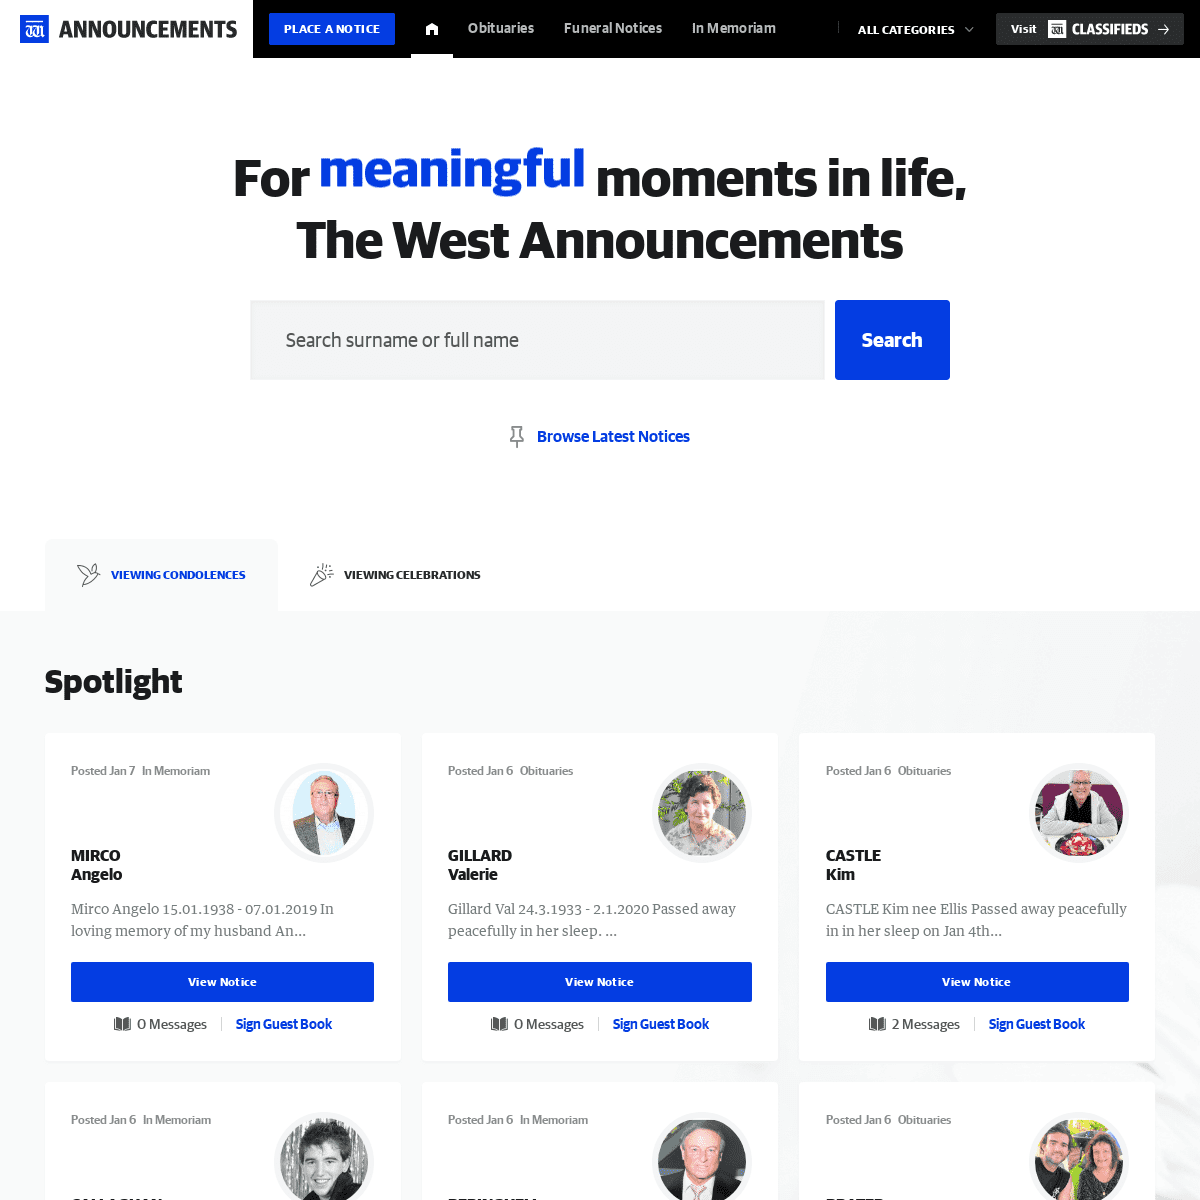 A complete backup of westannouncements.com.au